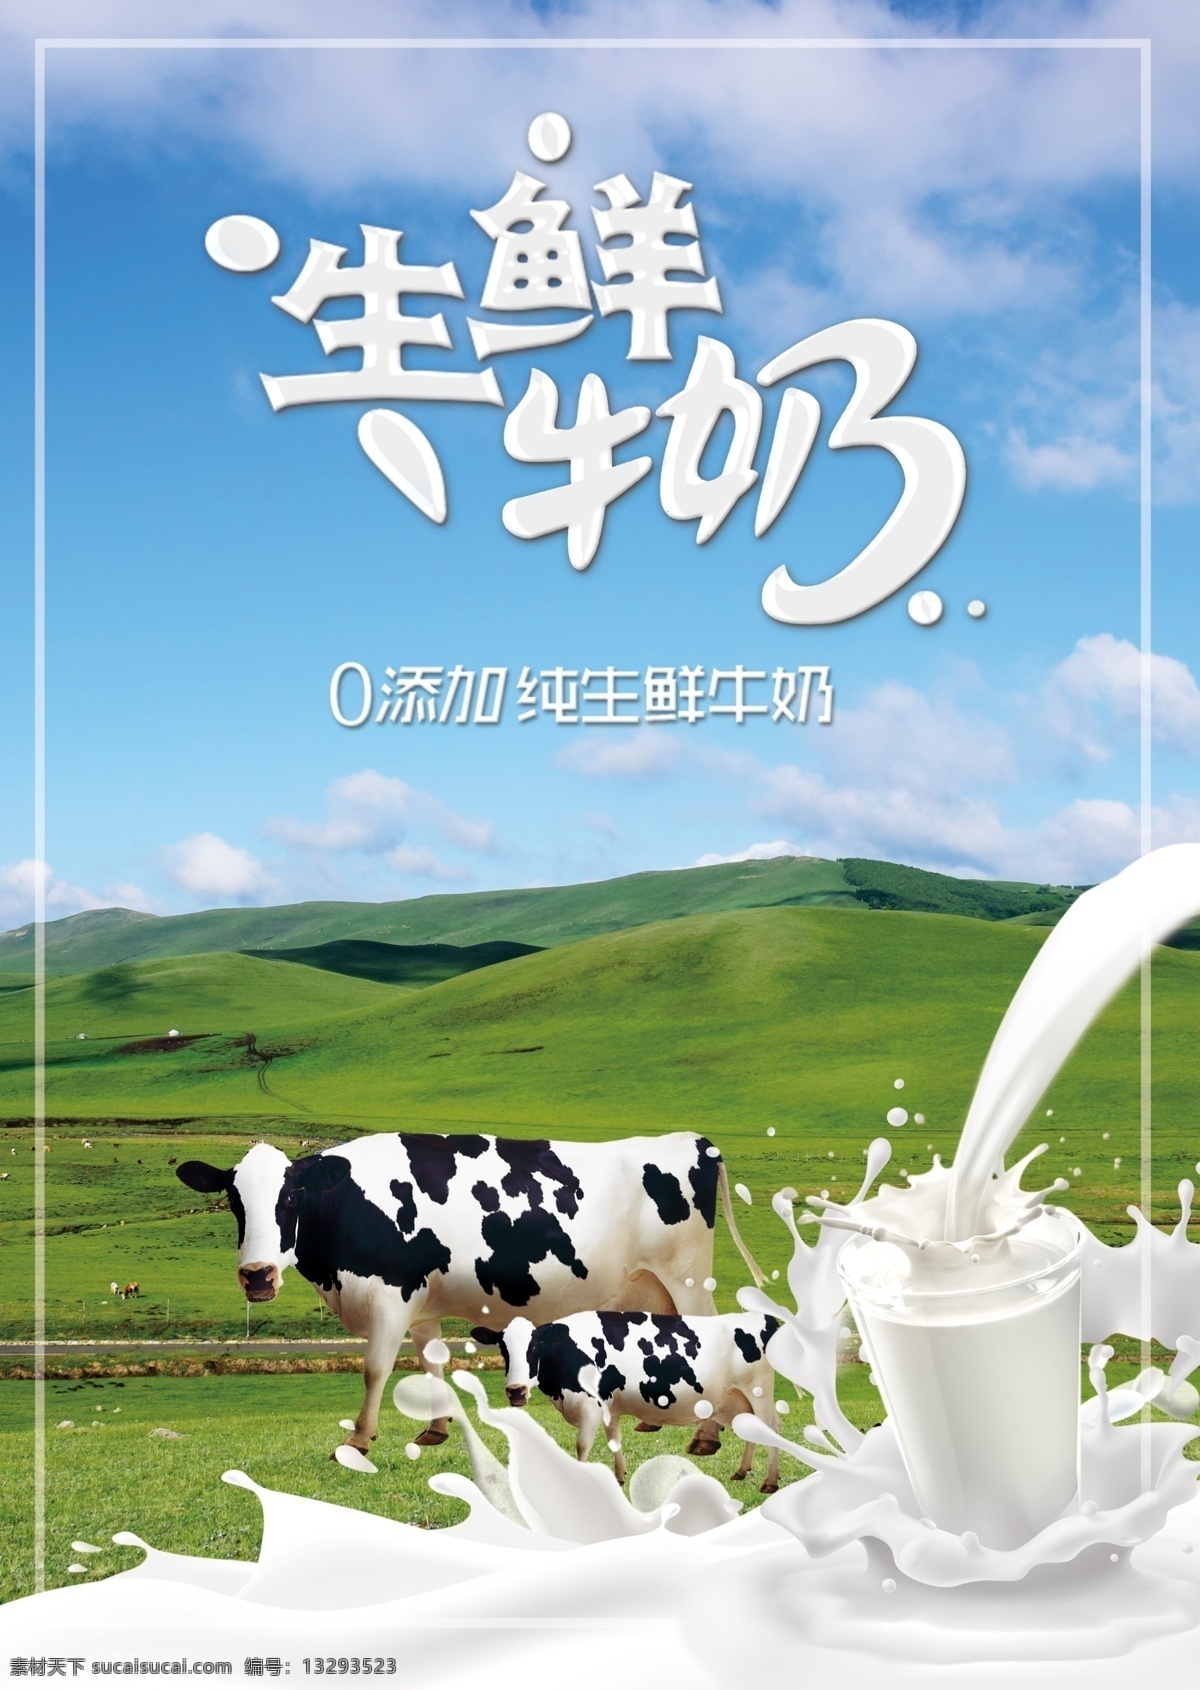 生鲜牛奶图片 牛奶 奶牛 生鲜牛奶 蓝天 草原 移门图案